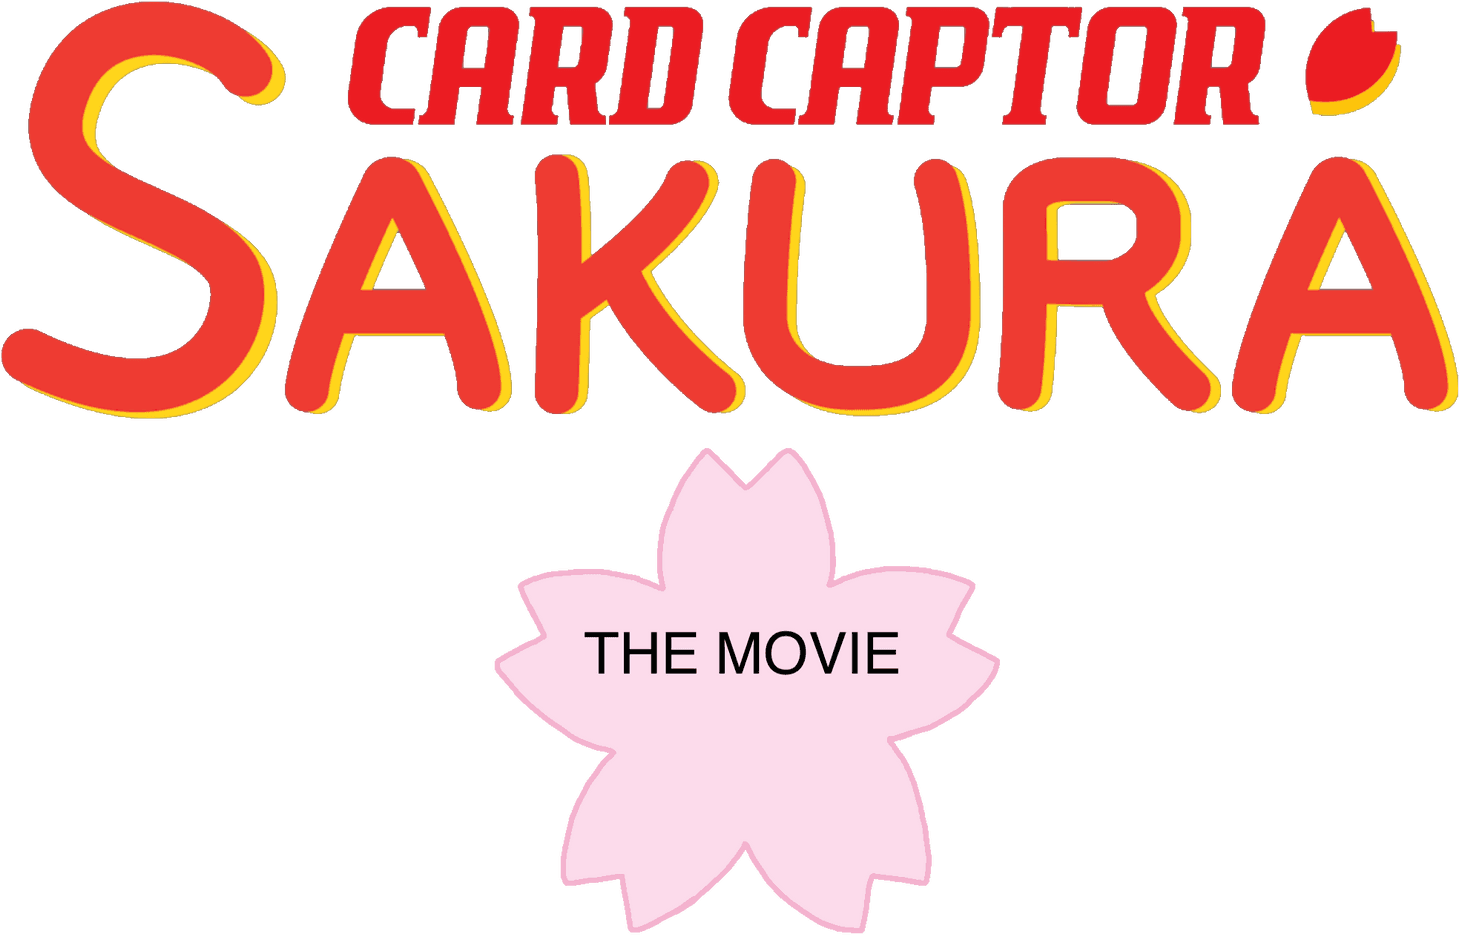 Cardcaptor Sakura: The Movie logo